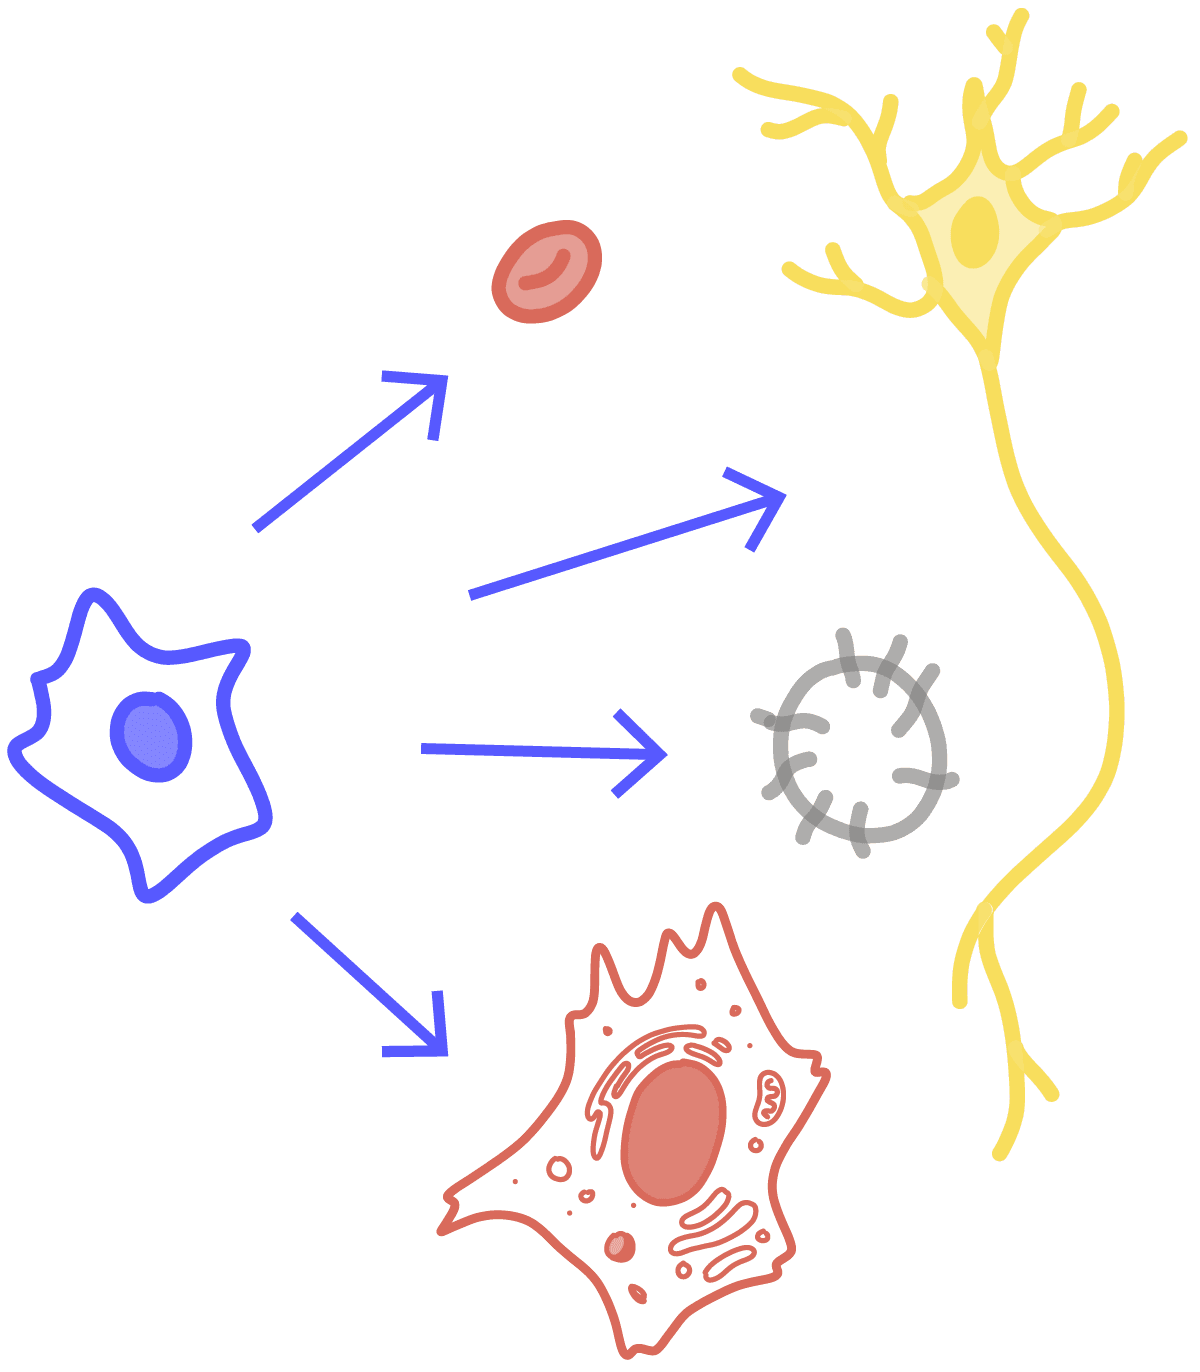 Imagen de una célula madre transformándose en diferentes tipos de células, incluidos un glóbulo rojo, una célula nerviosa, una célula somática y una célula germinal.